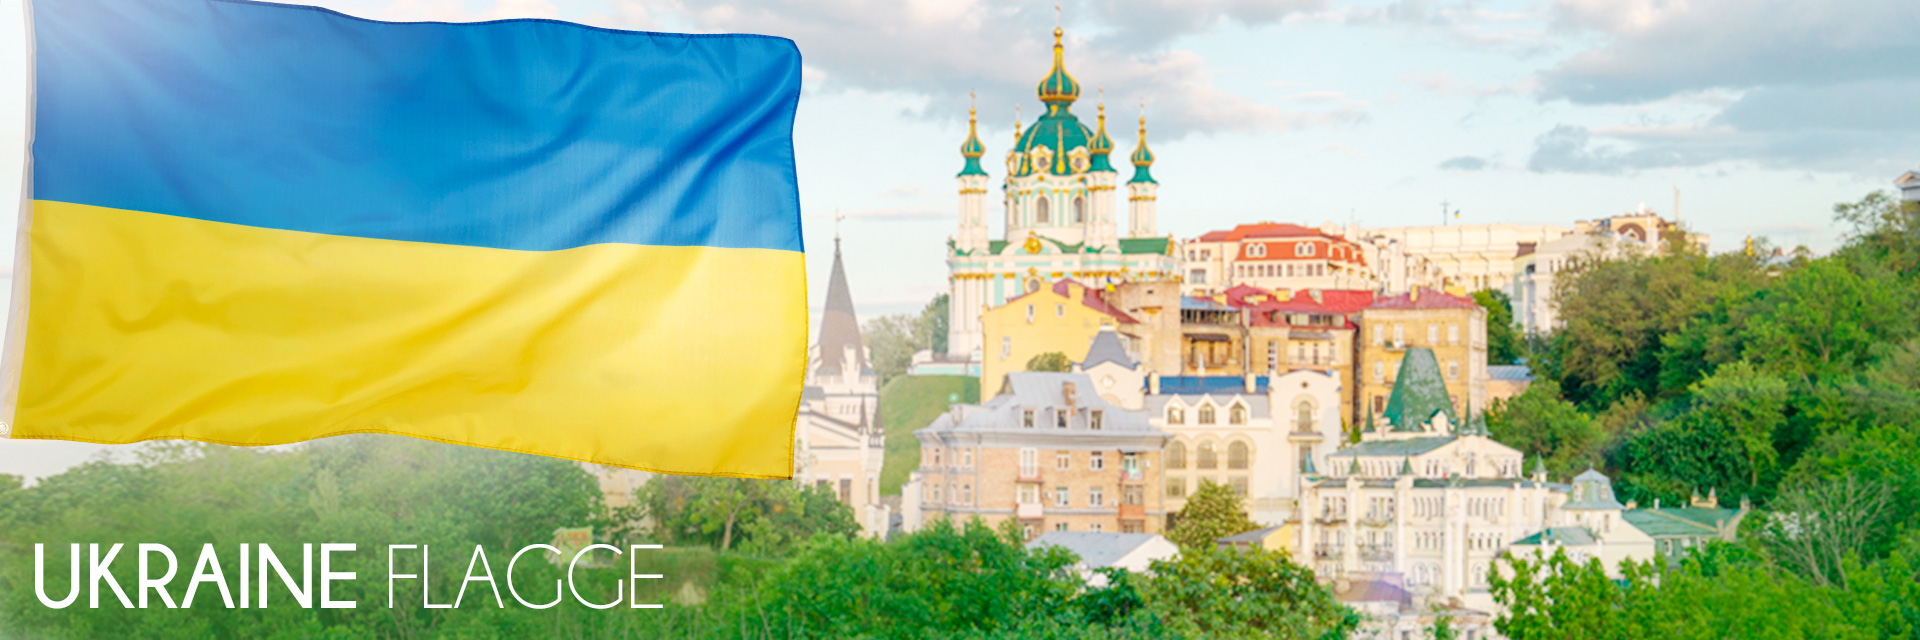 Ukraine Flagge kaufen – jetzt günstig online kaufen